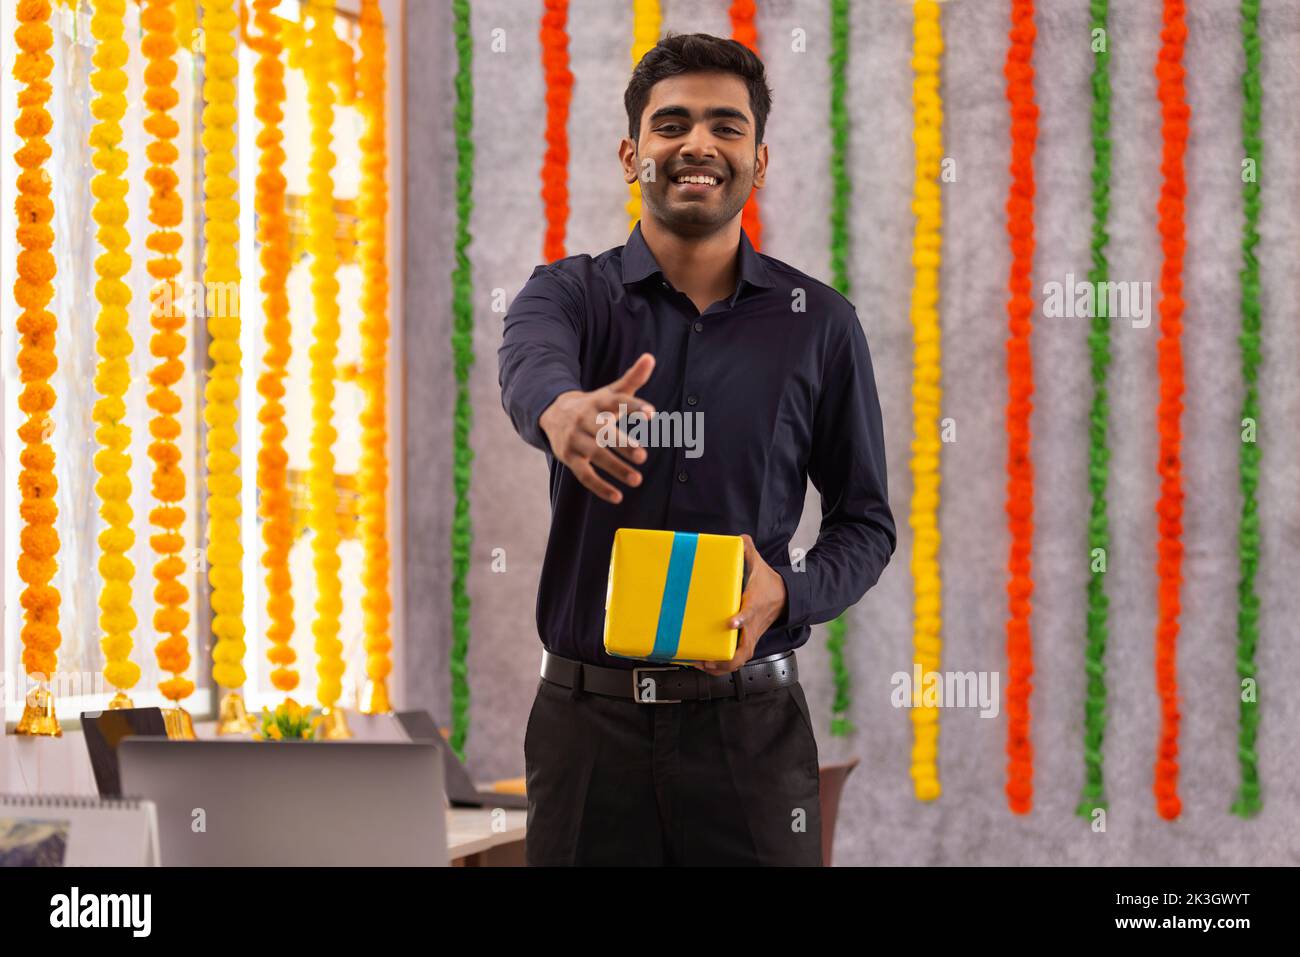 Retrato de un joven sonriente a punto de estrechar la mano en el cargo durante la celebración de Diwali Foto de stock